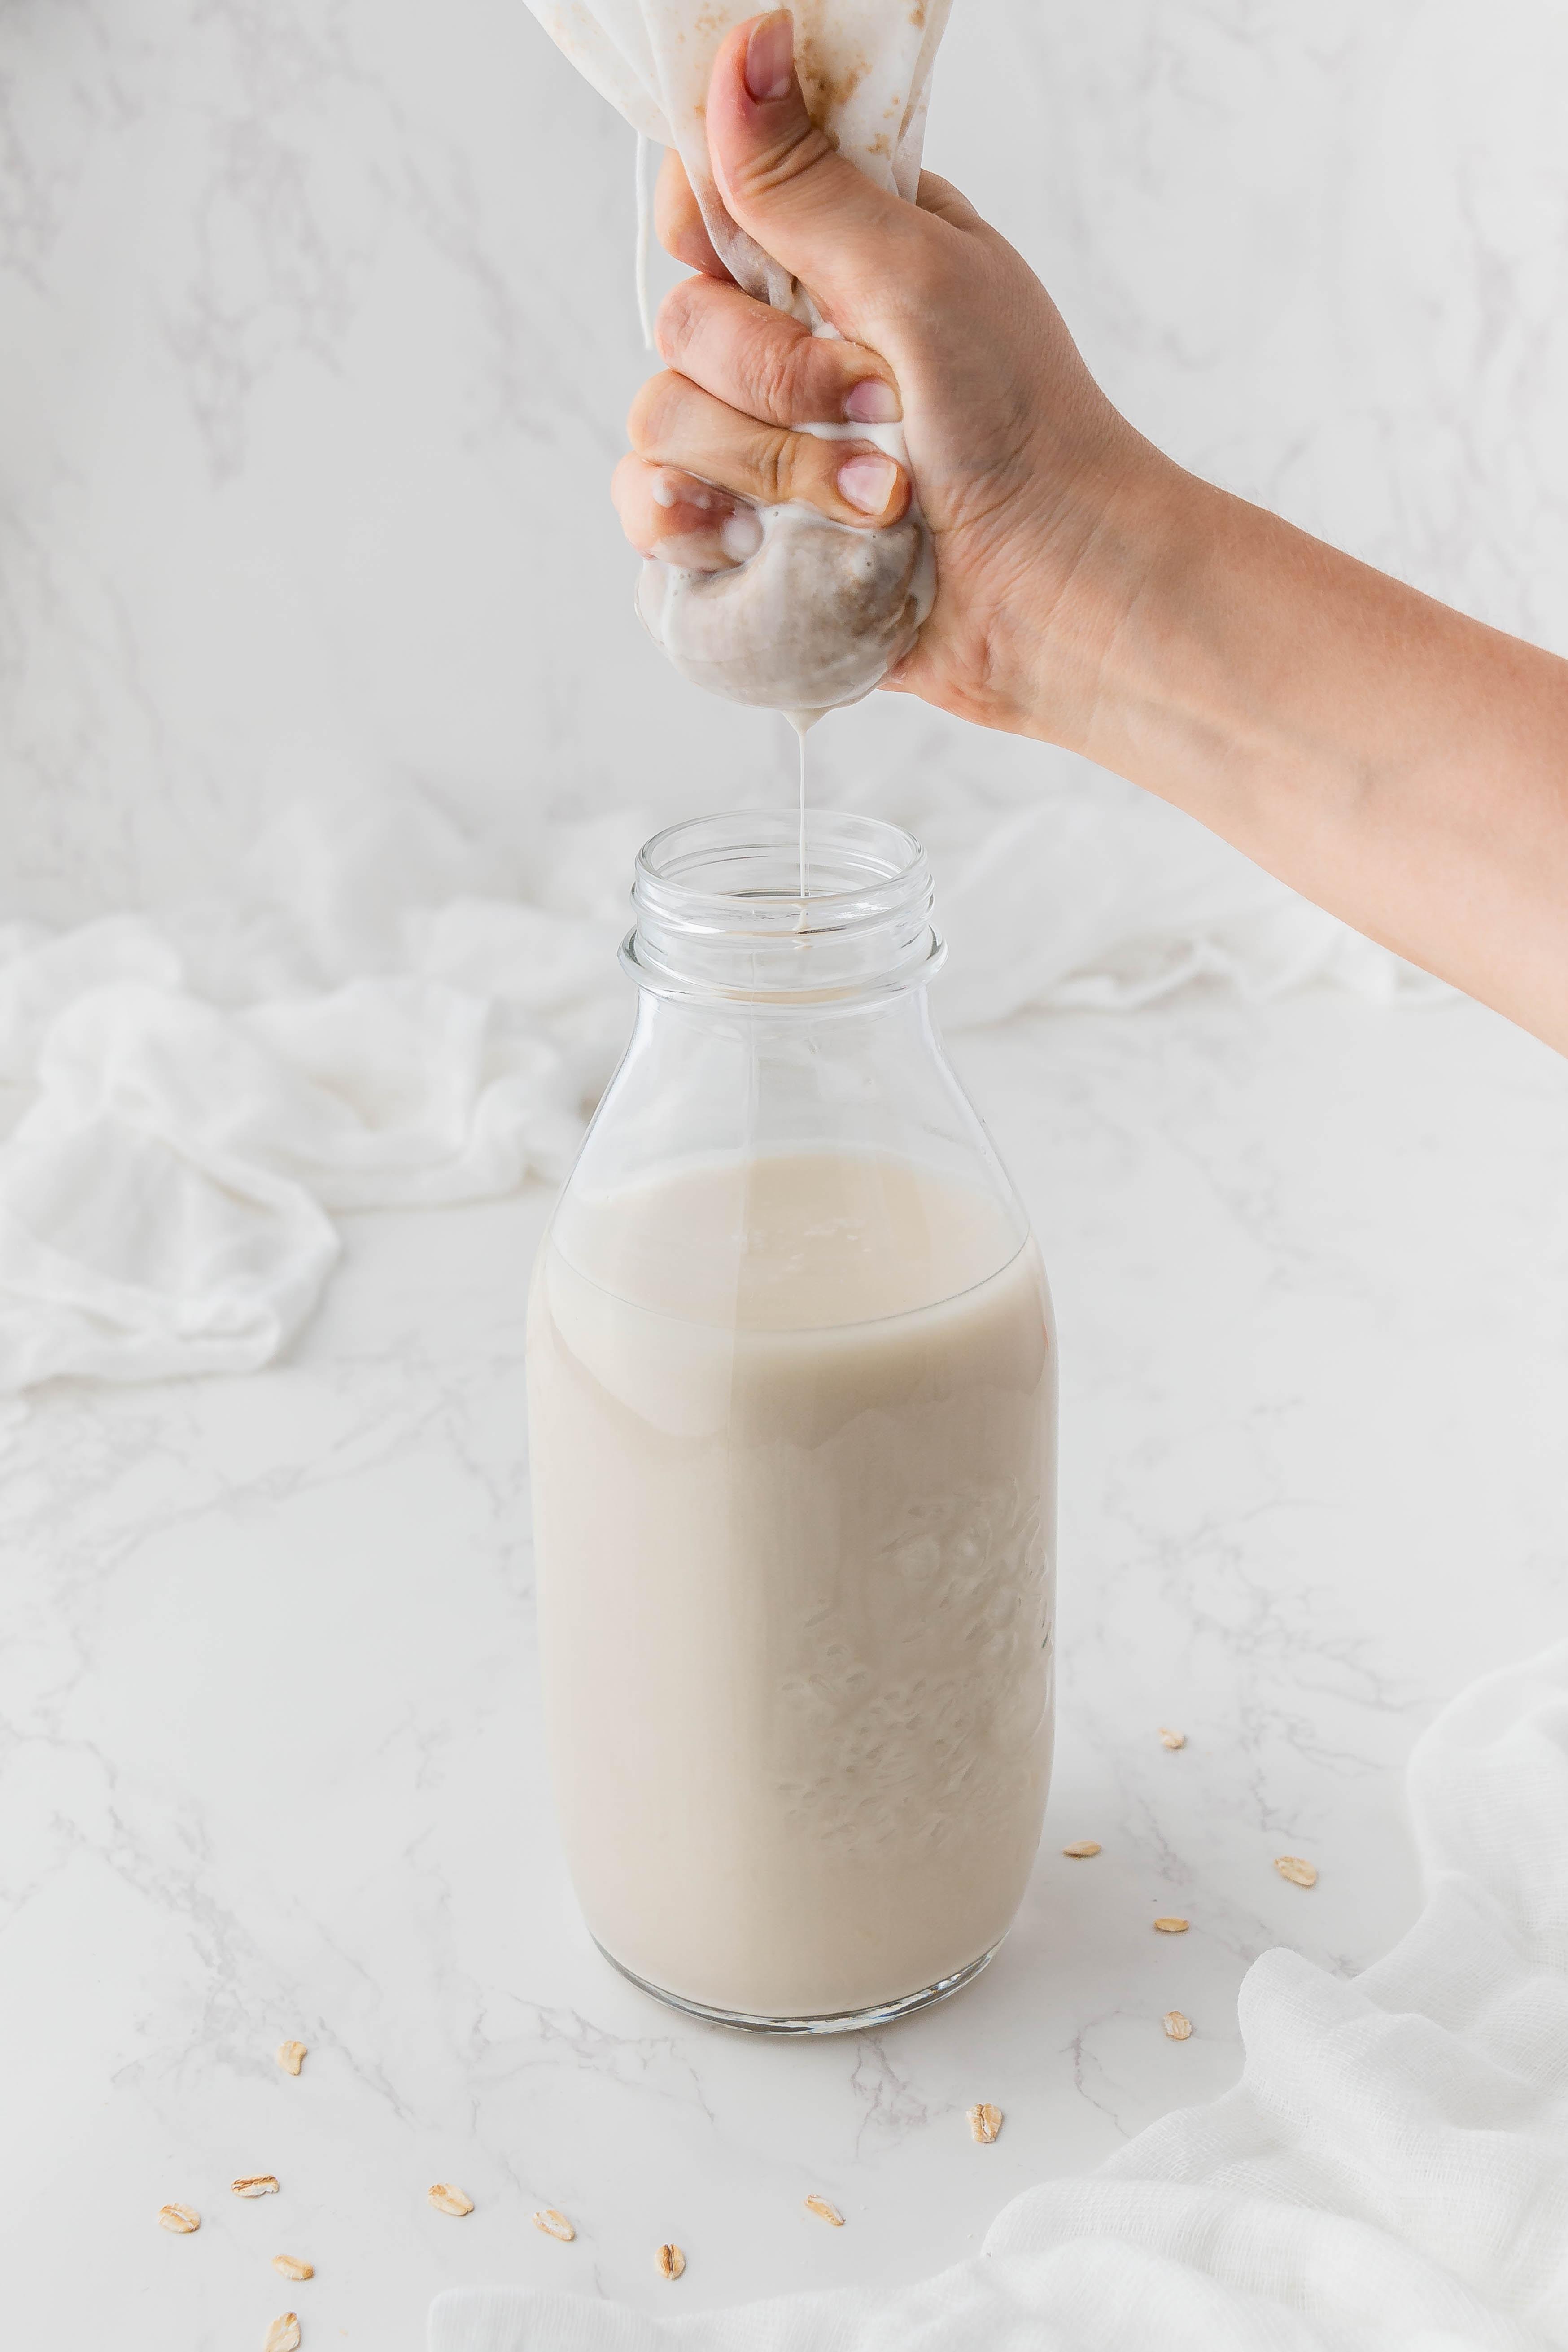 Jakie właściwości ma mleko owsiane? Jak zrobić domowe mleko owsiane - krok po kroku. Mleko owsiane: jak zrobić je w domu? Przepis na mleko owsiane